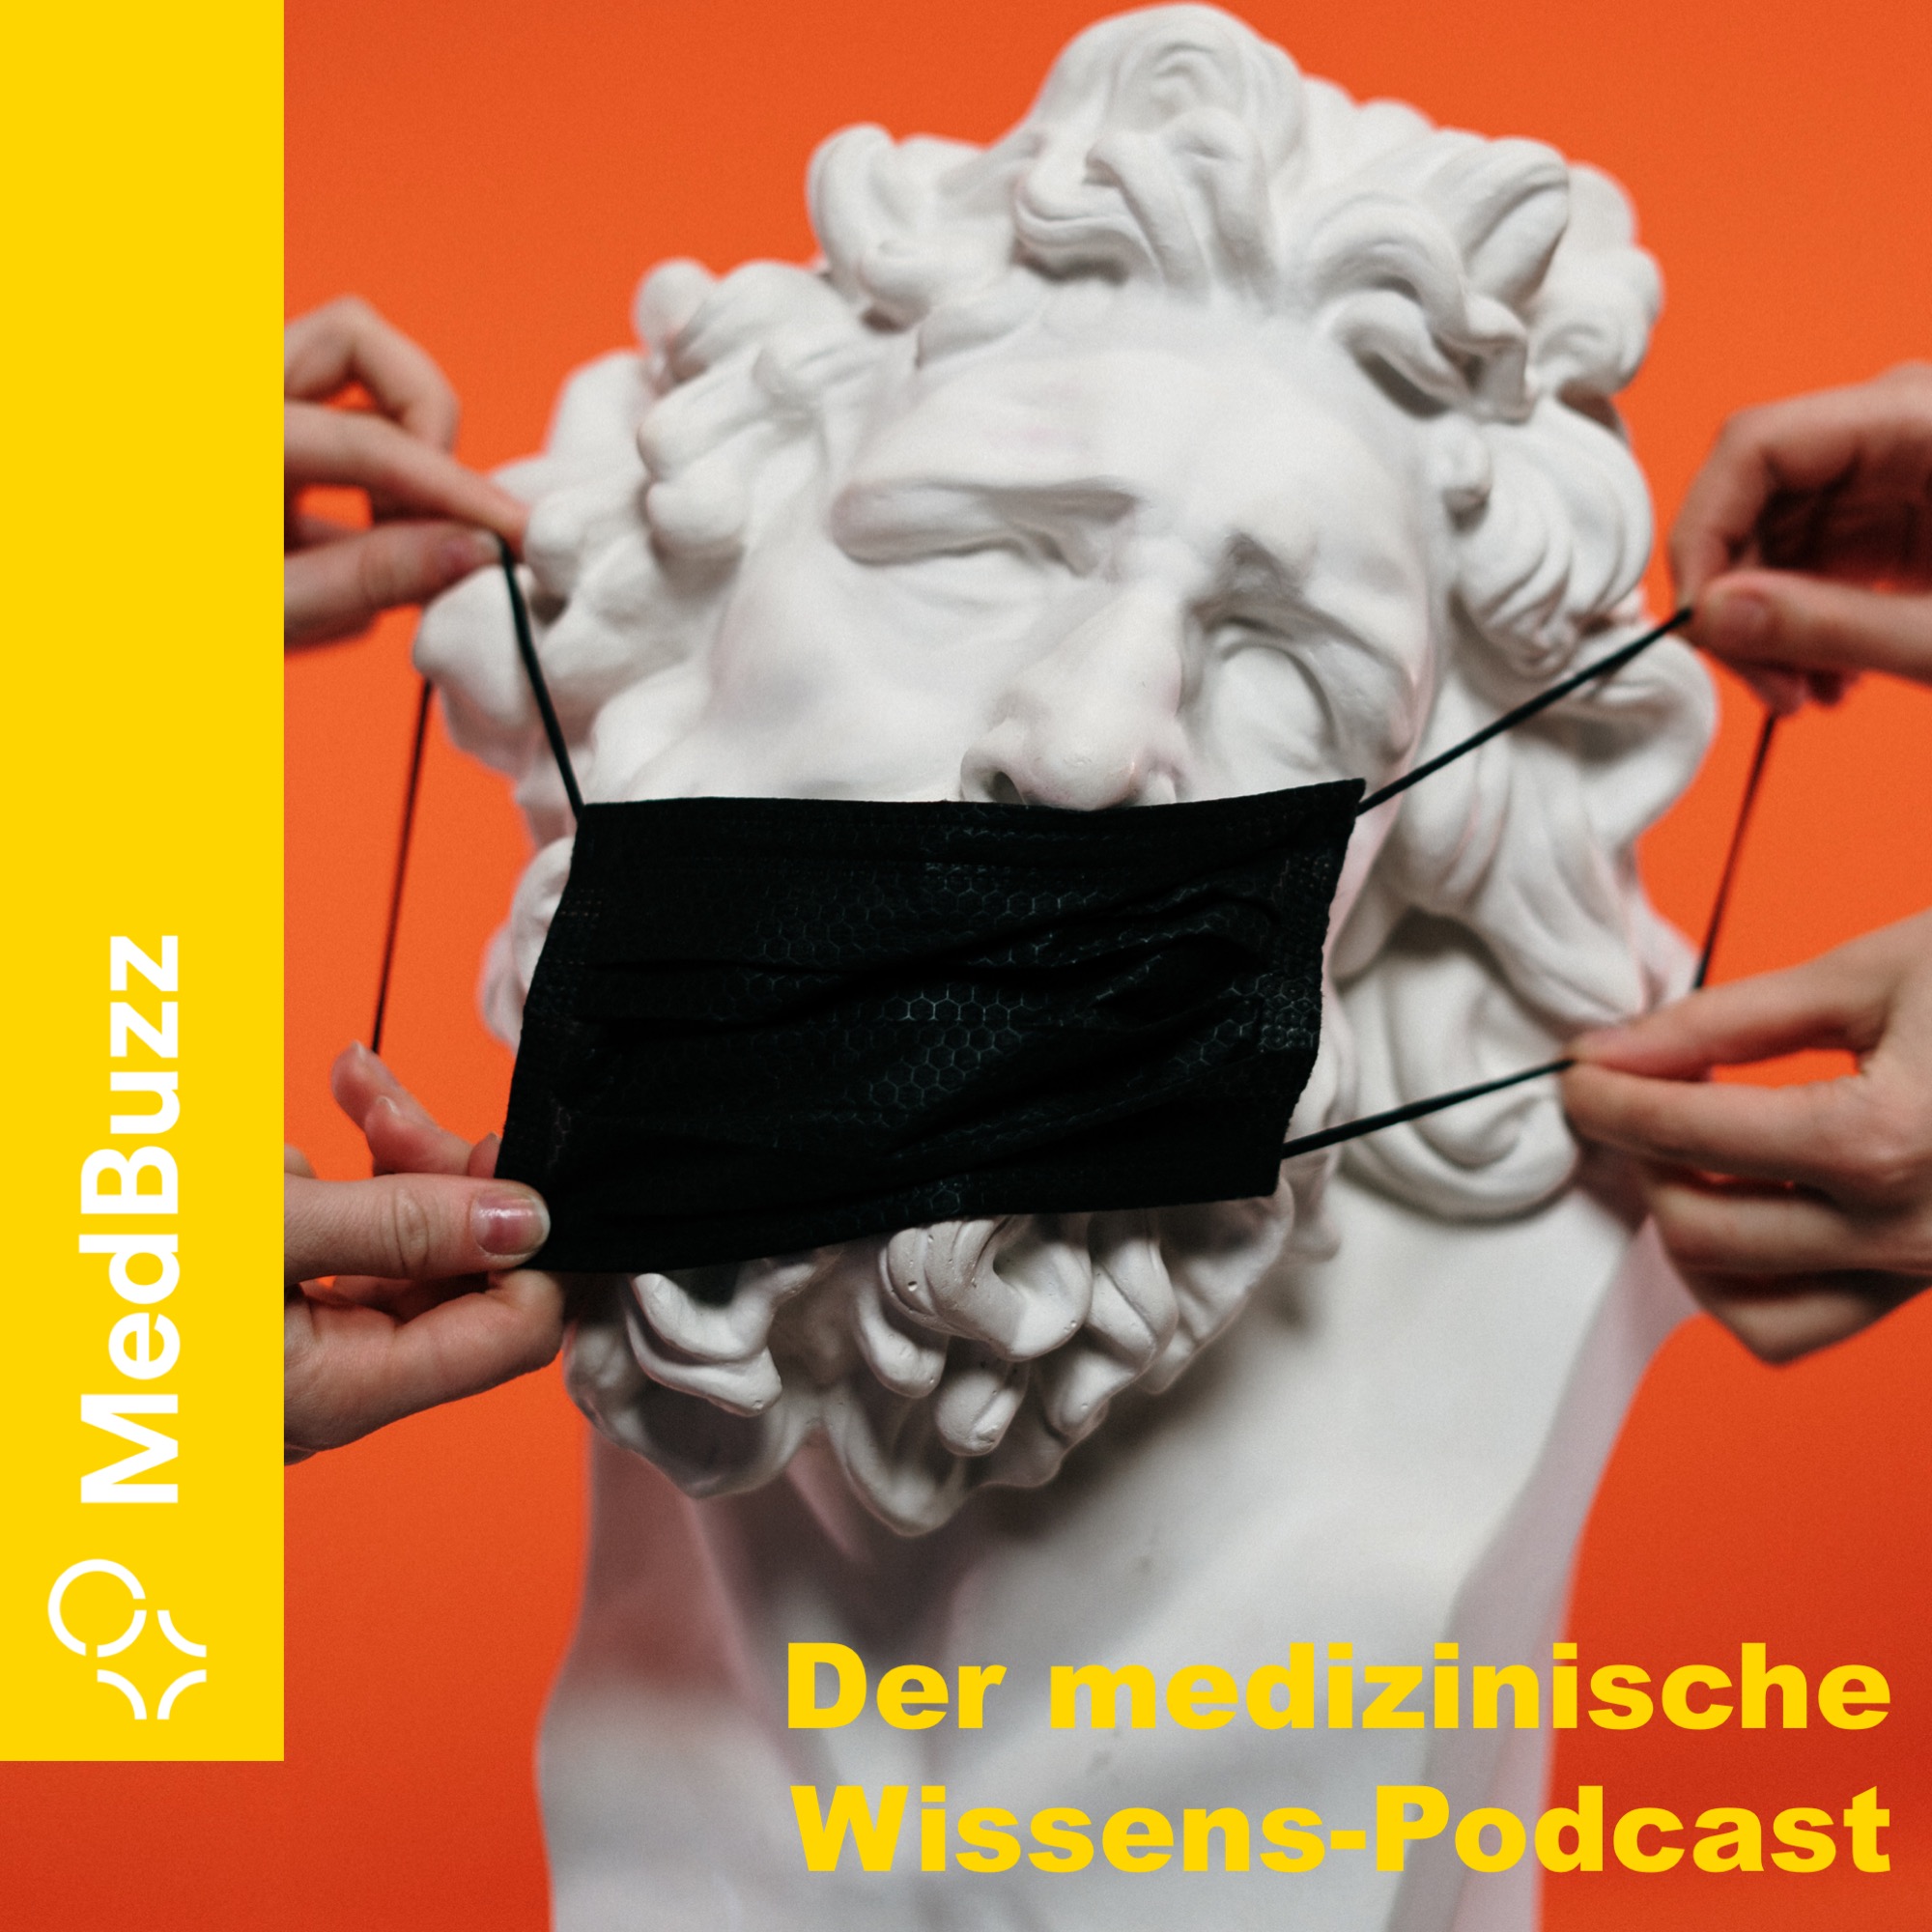 Medbuzz - Der medizinische Wissens-Podcast